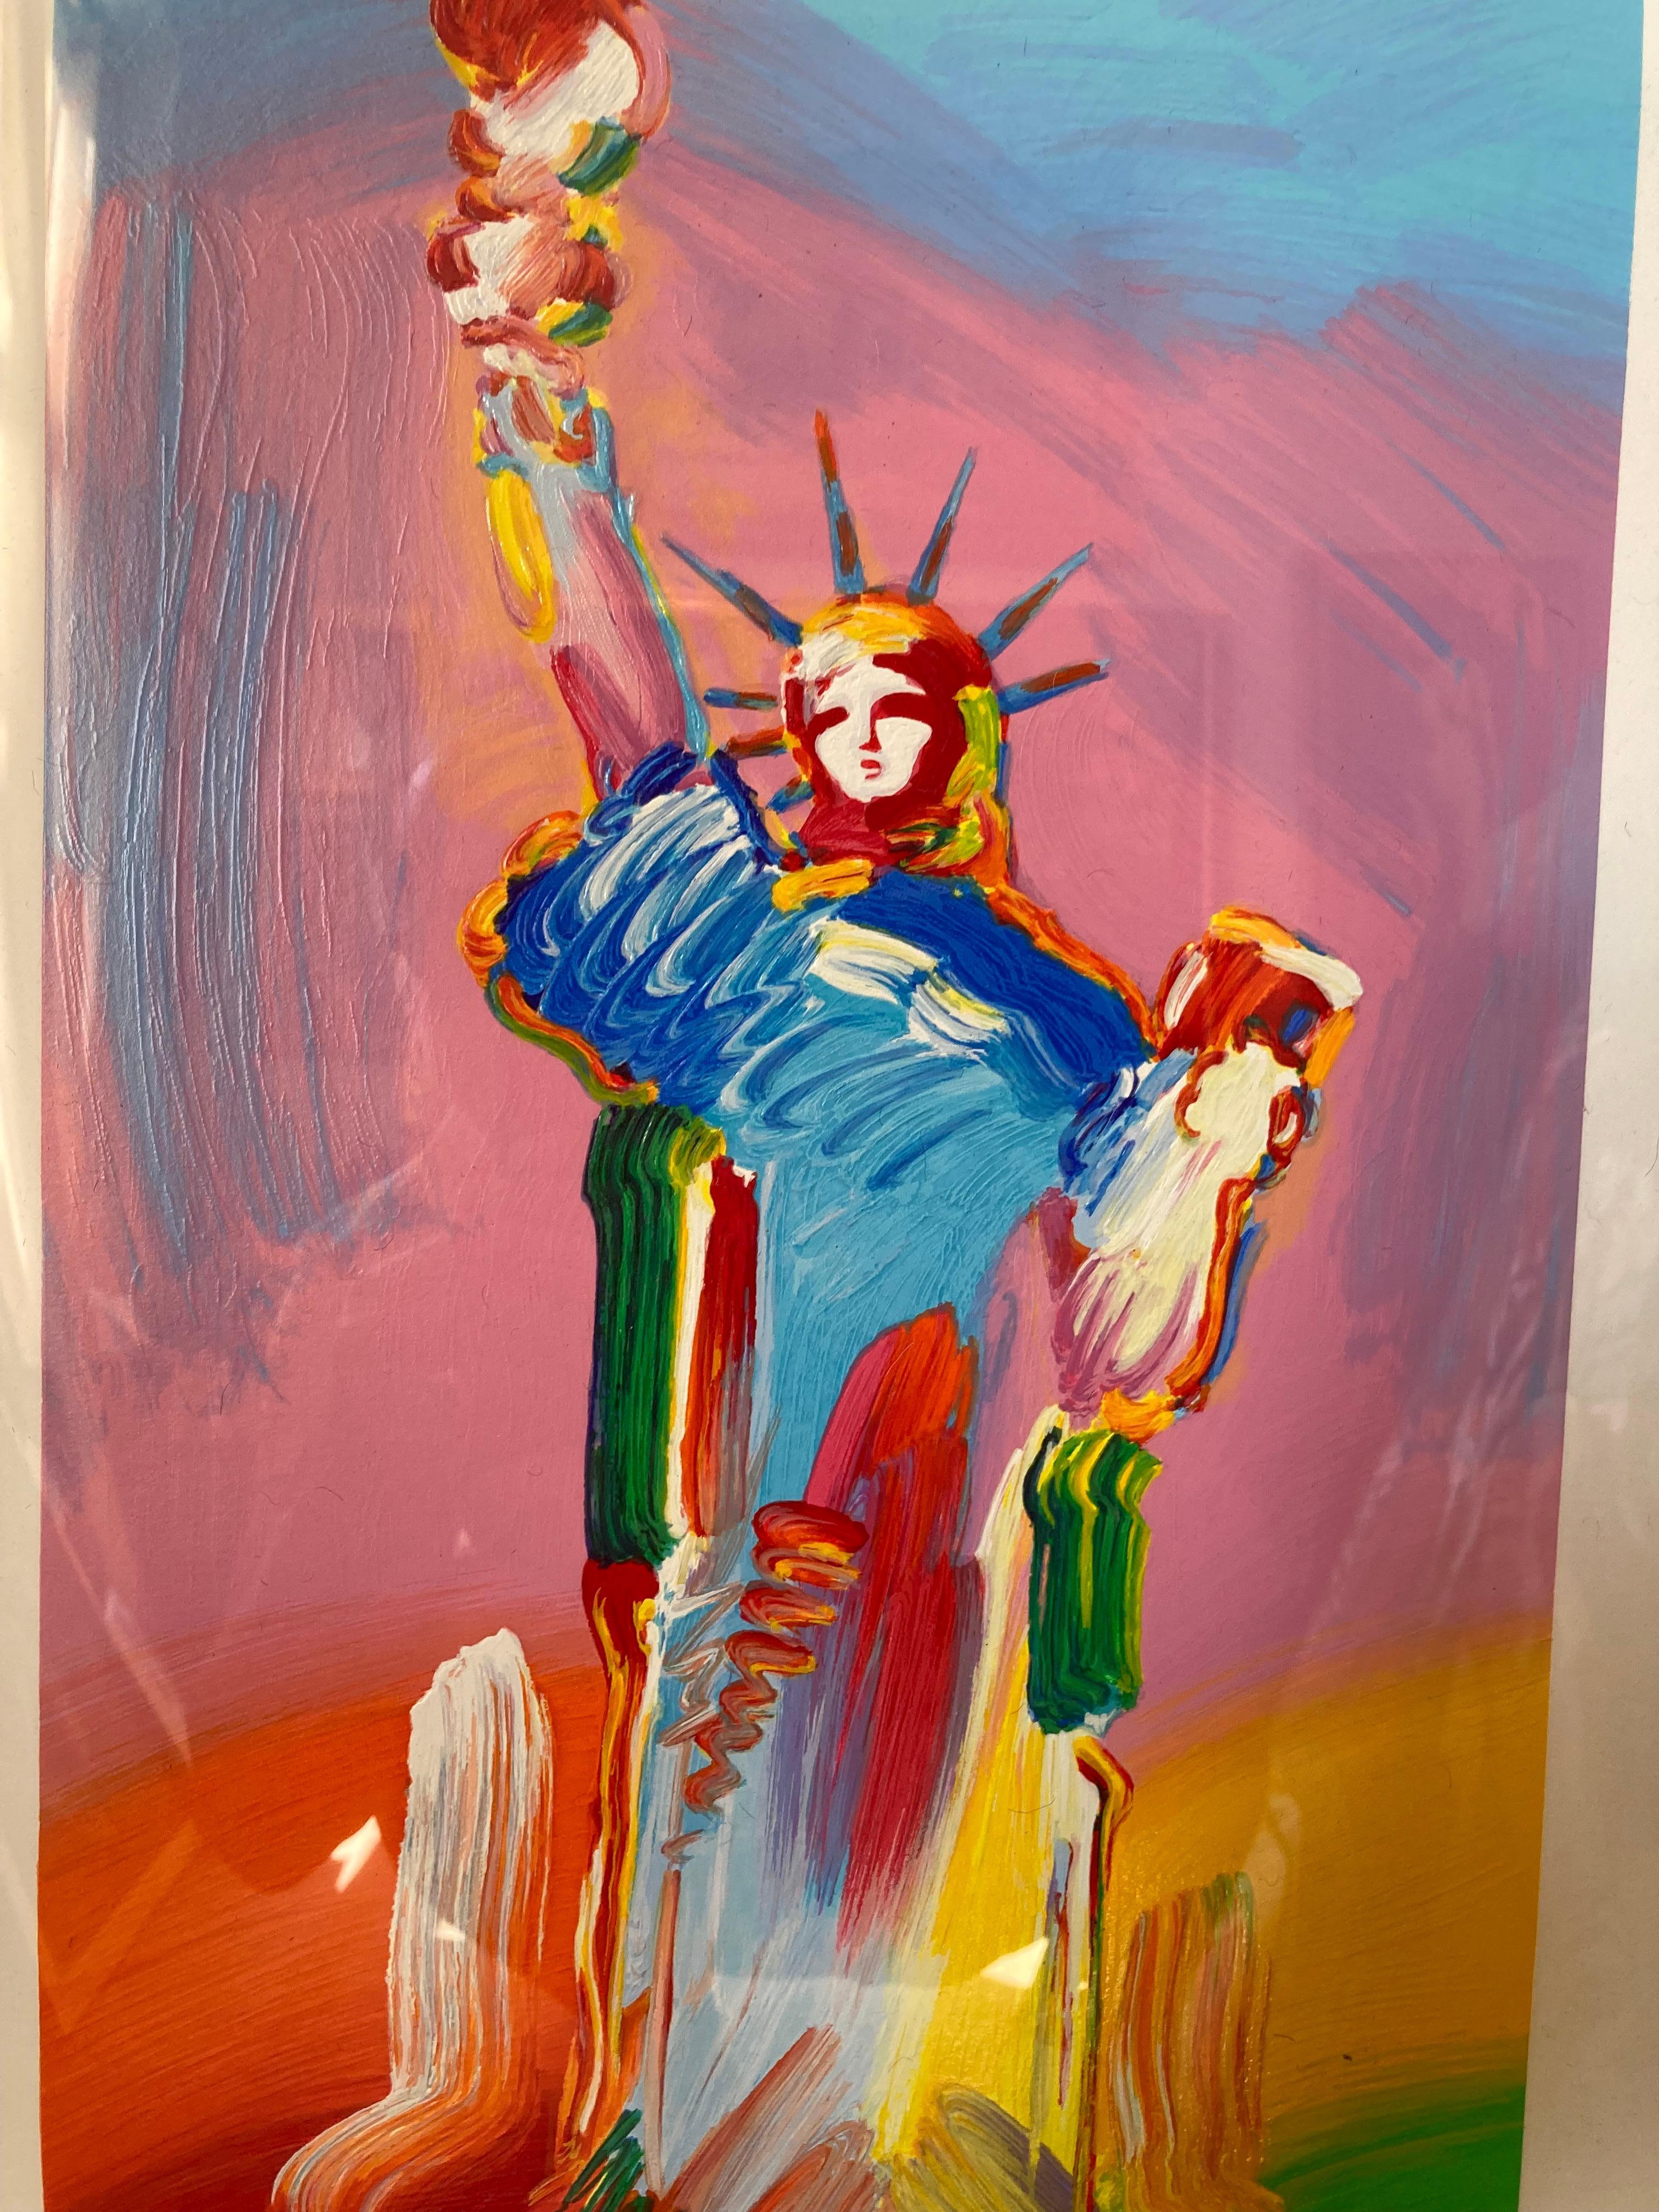 Ein großes, helles, kraftvolles Bild der Freiheitsstatue des berühmten amerikanischen Künstlers Peter Max. Ich habe ein Foto des gleichen Drucks beigefügt, der auf Artsy für deutlich mehr Geld angeboten wird. Weitere Informationen über diese